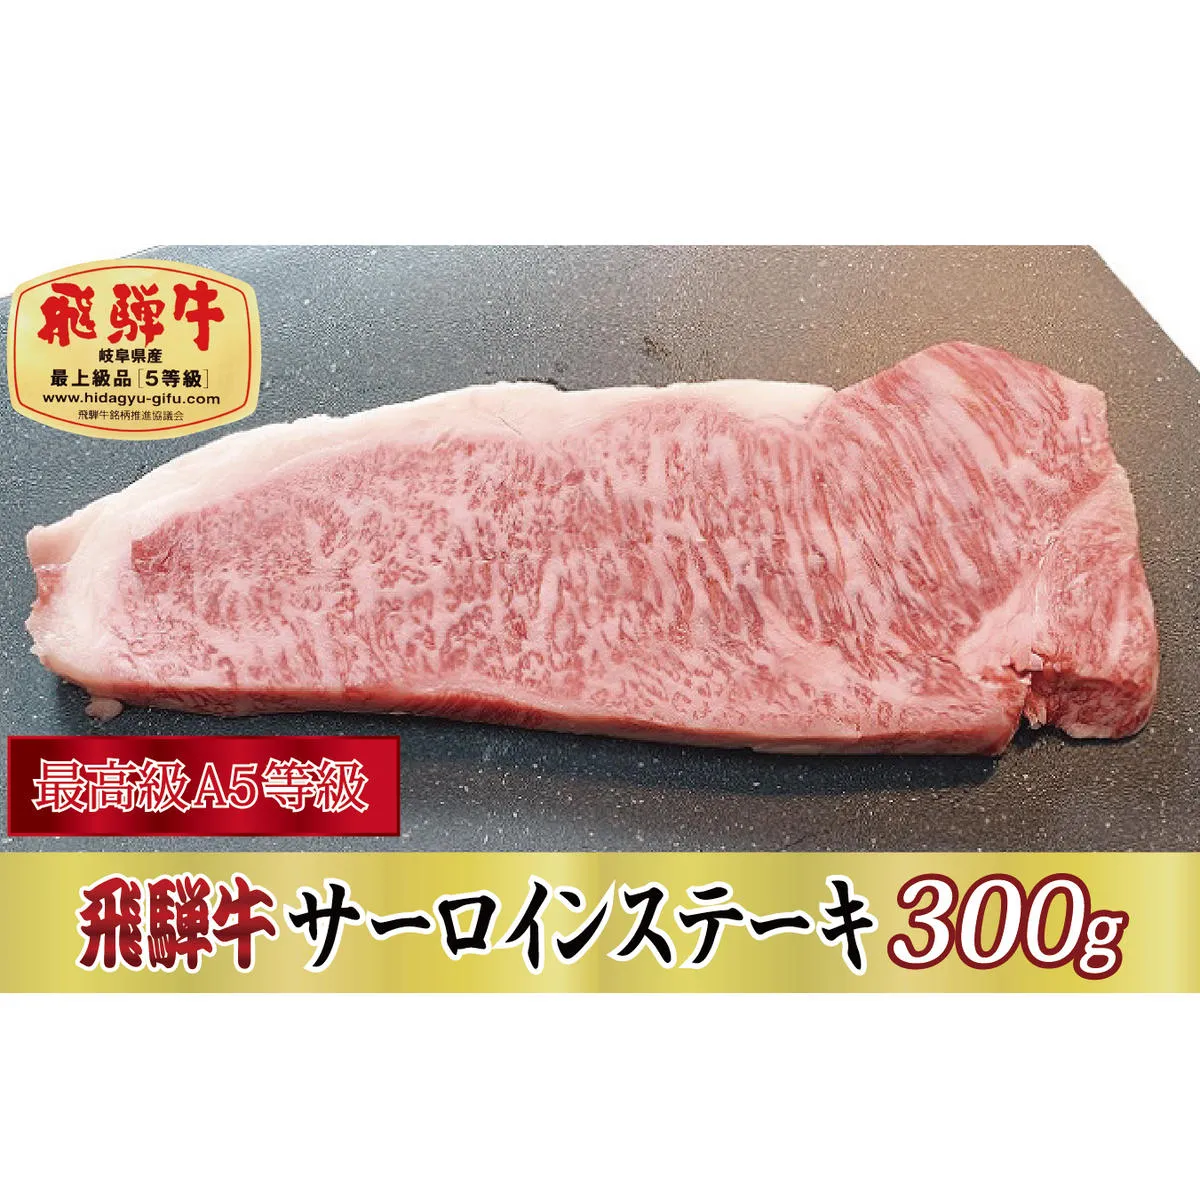 【最高級A5等級】飛騨牛サーロインステーキ300g